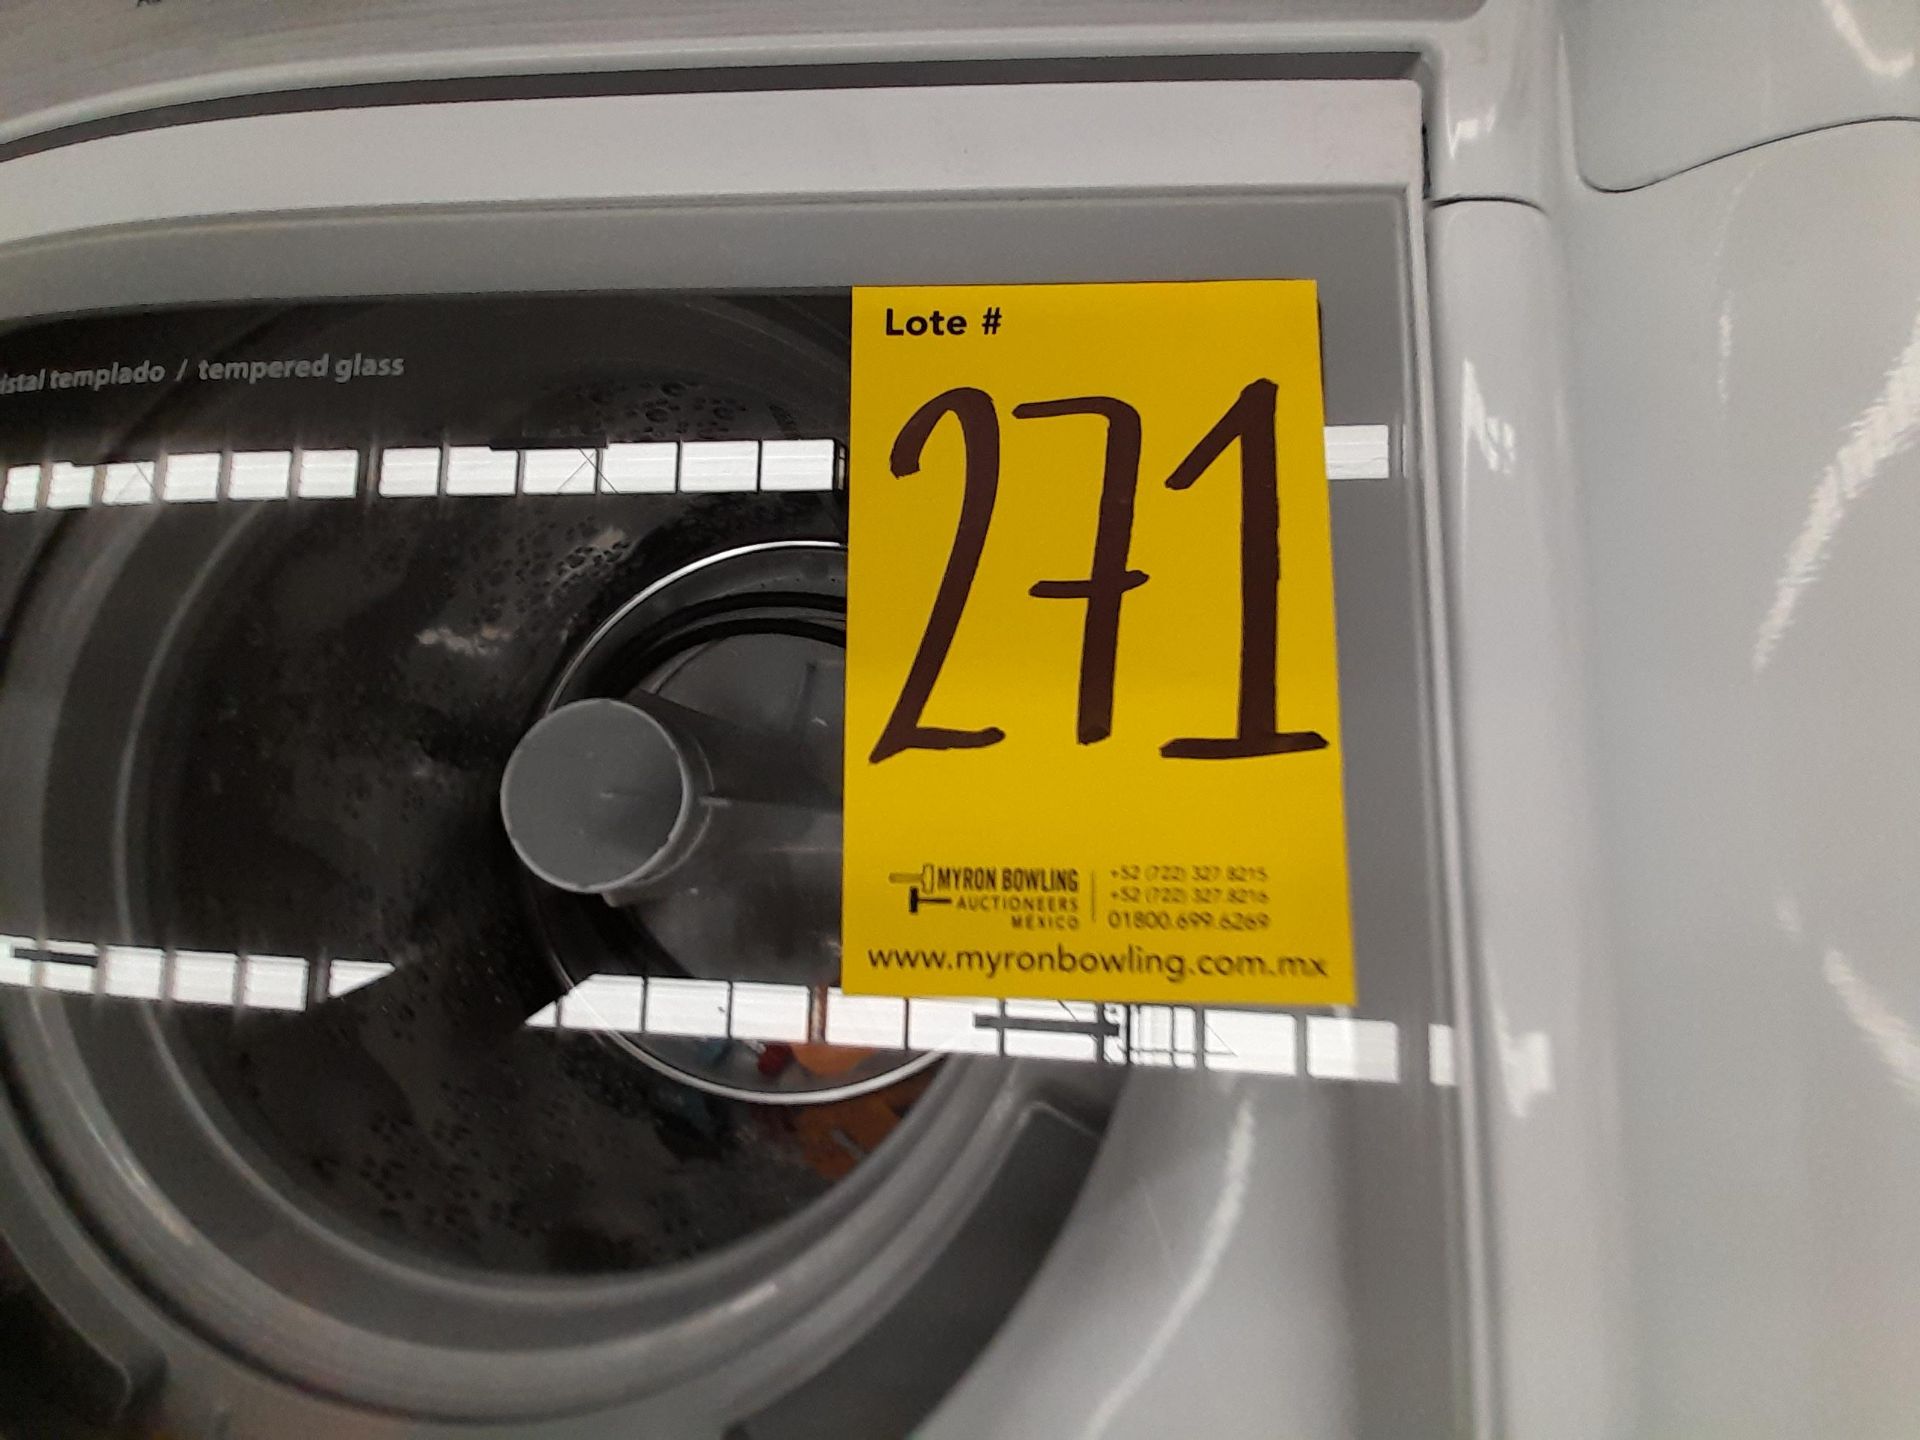 Lote de 2 lavadoras Contiene: 1 lavadora de 20 KG, marca MABE, modelo LMA70214VBAB03, serie S12869, - Image 5 of 5